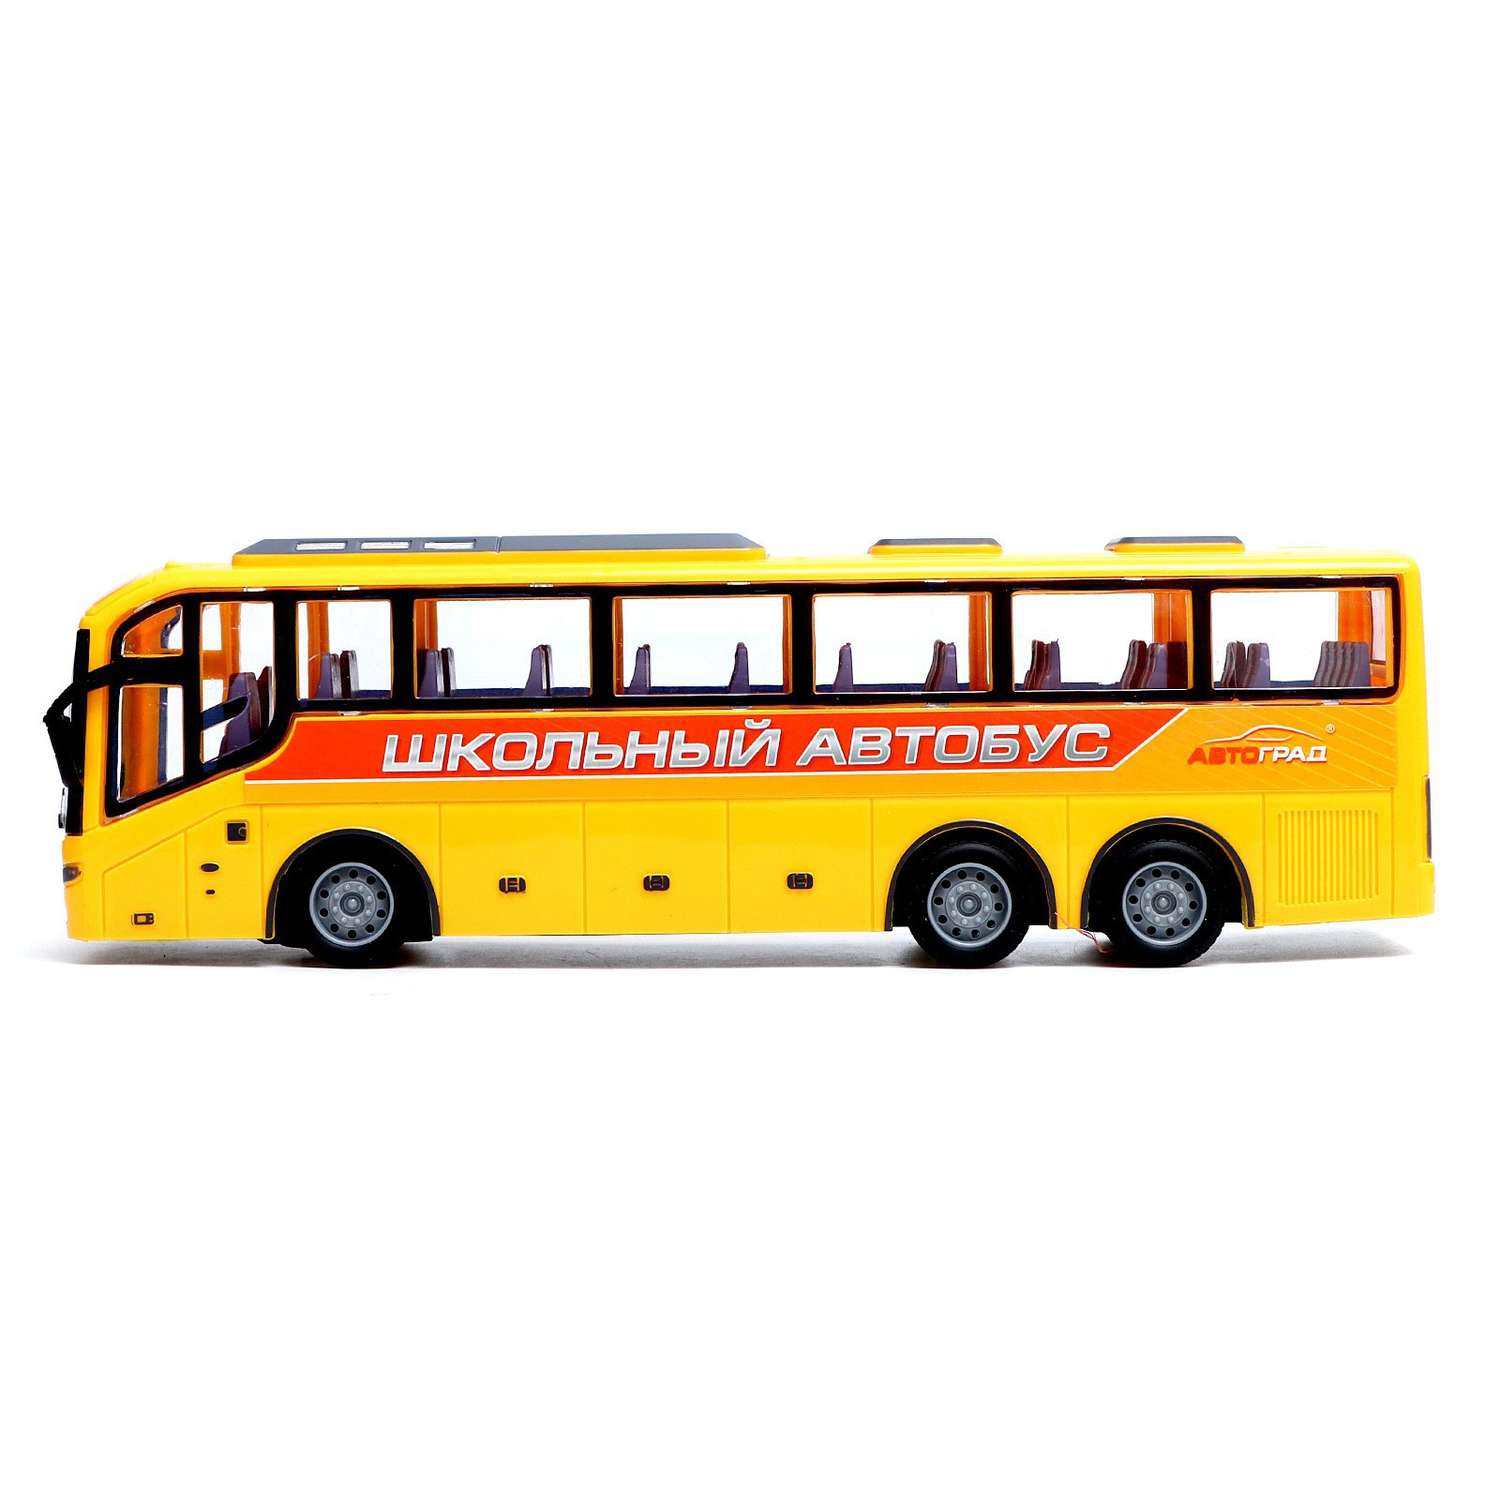 Автобус Автоград радиоуправляемый «Школьный» масштаб 1:30 работает от батареек цвет жёлтый - фото 2